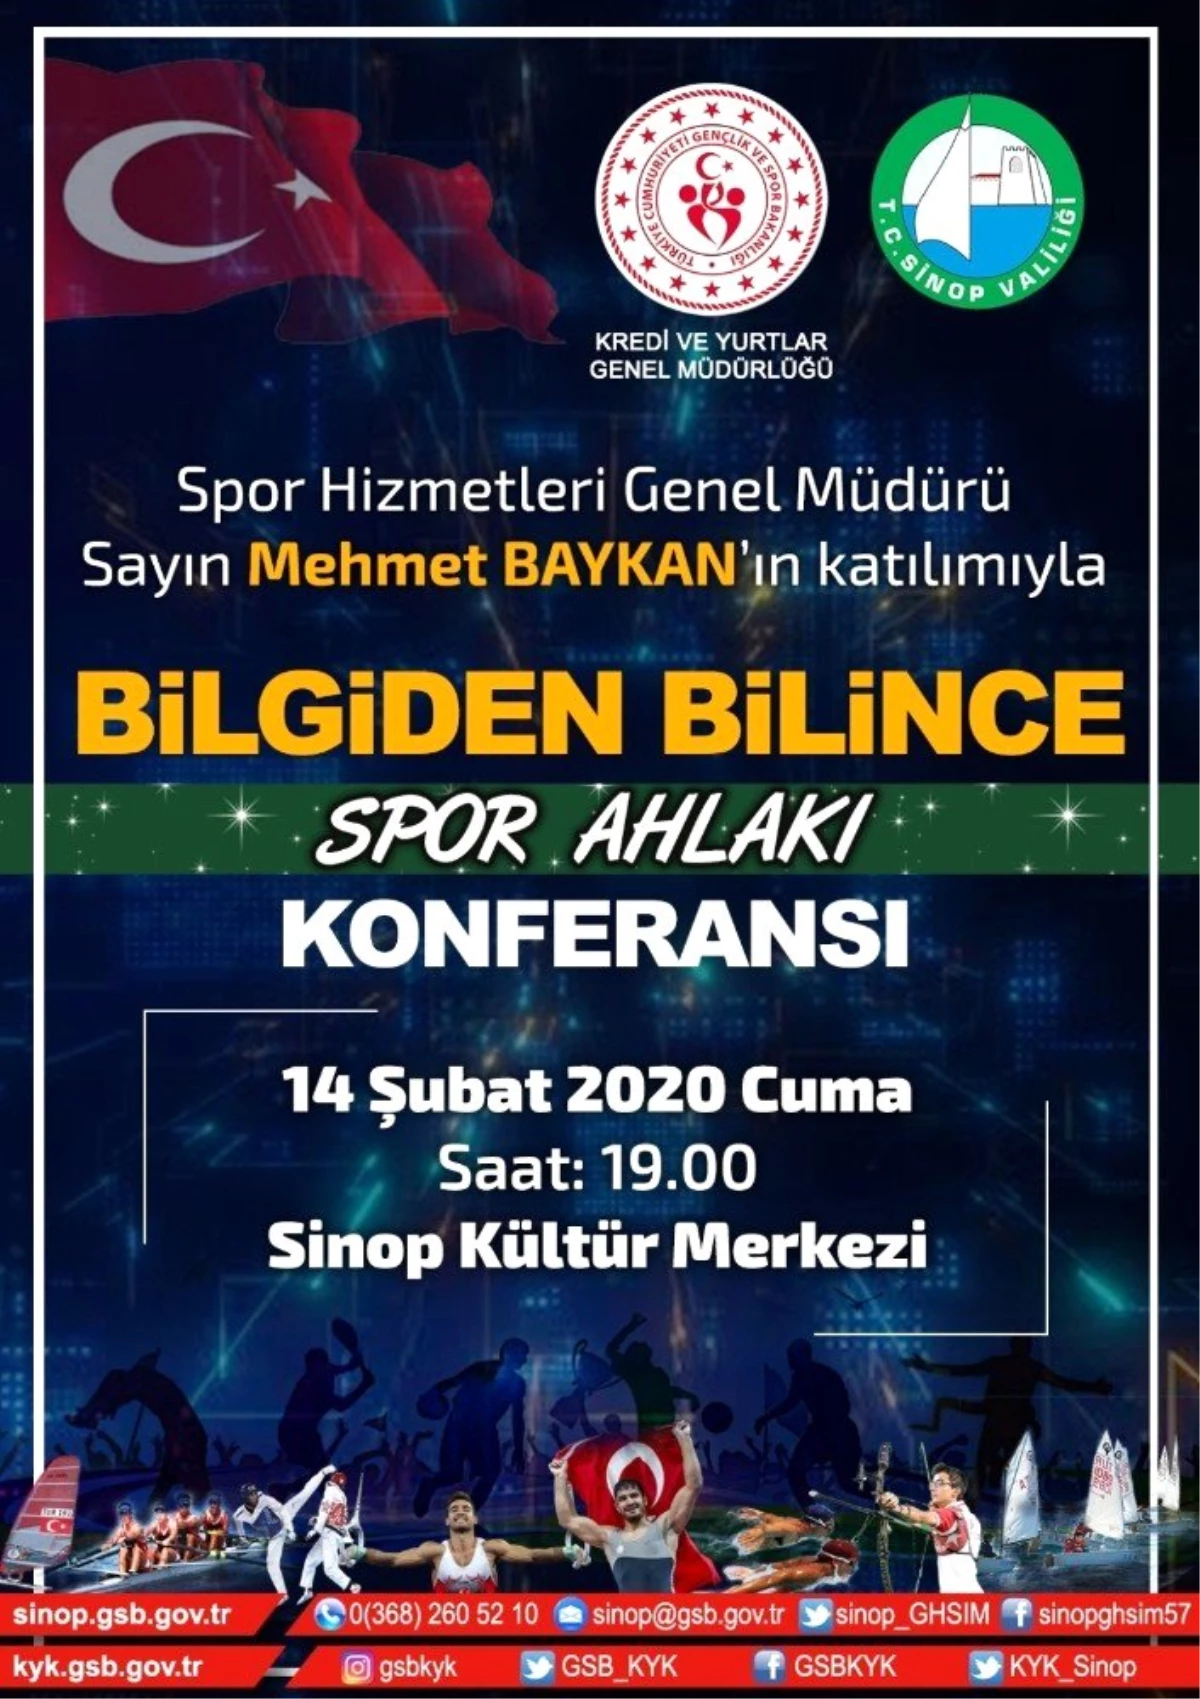 Sinop\'ta "Bilgiden Bilince Spor Ahlakı Konferansı" yapılacak